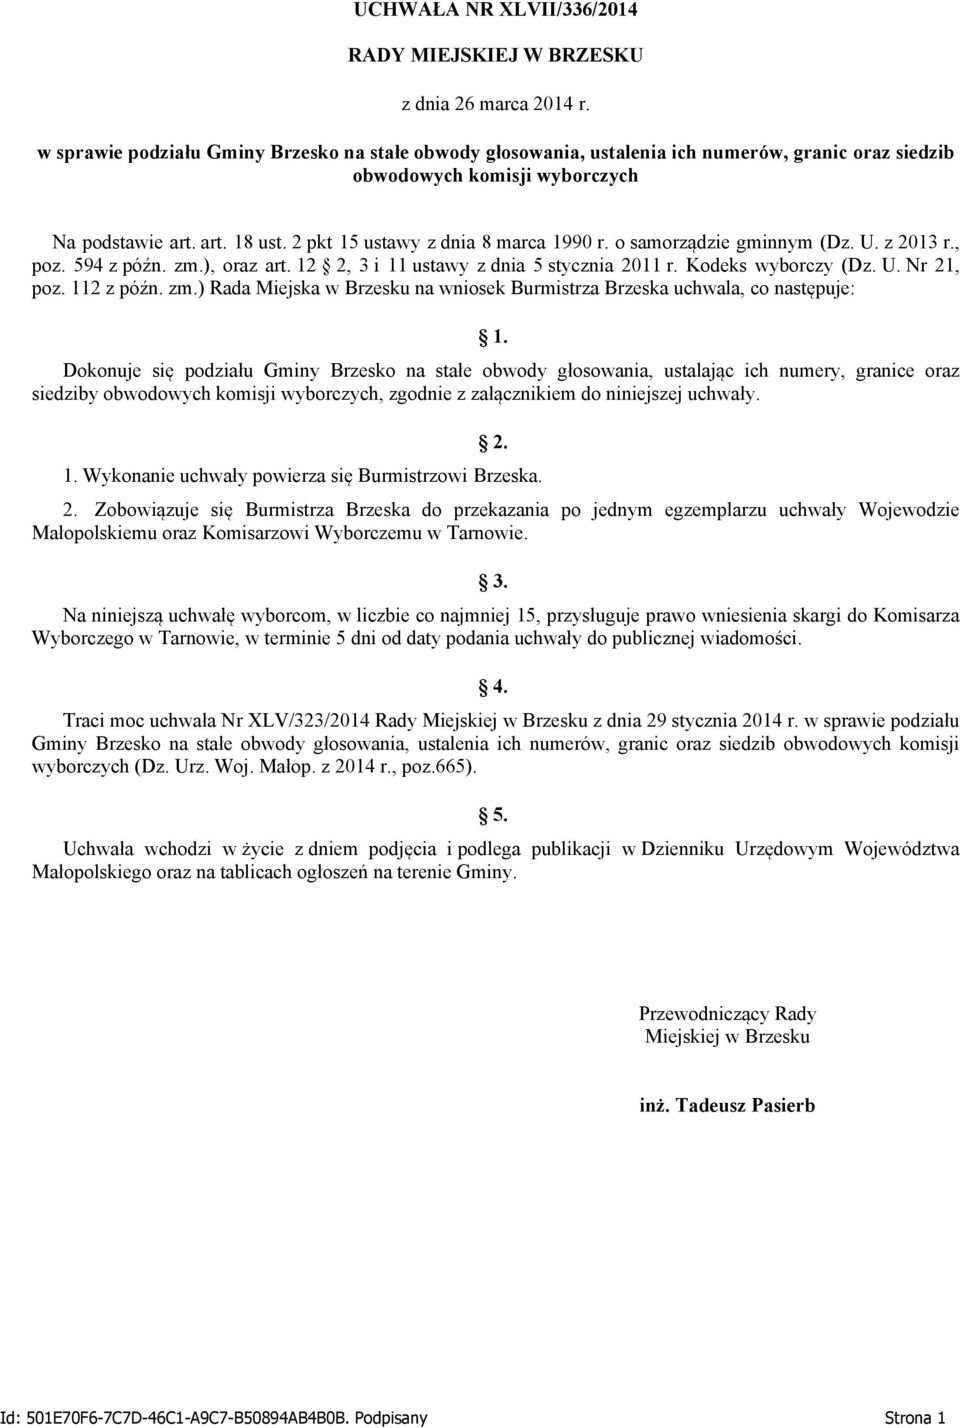 o samorządzie gminnym (Dz. U. z 2013 r., poz. 594 z późn. zm.), oraz art. 12 2, 3 i 11 ustawy z dnia 5 stycznia 2011 r. Kodeks wyborczy (Dz. U. Nr 21, poz. 112 z późn. zm.) Rada Miejska w Brzesku na wniosek Burmistrza Brzeska uchwala, co następuje: 1.